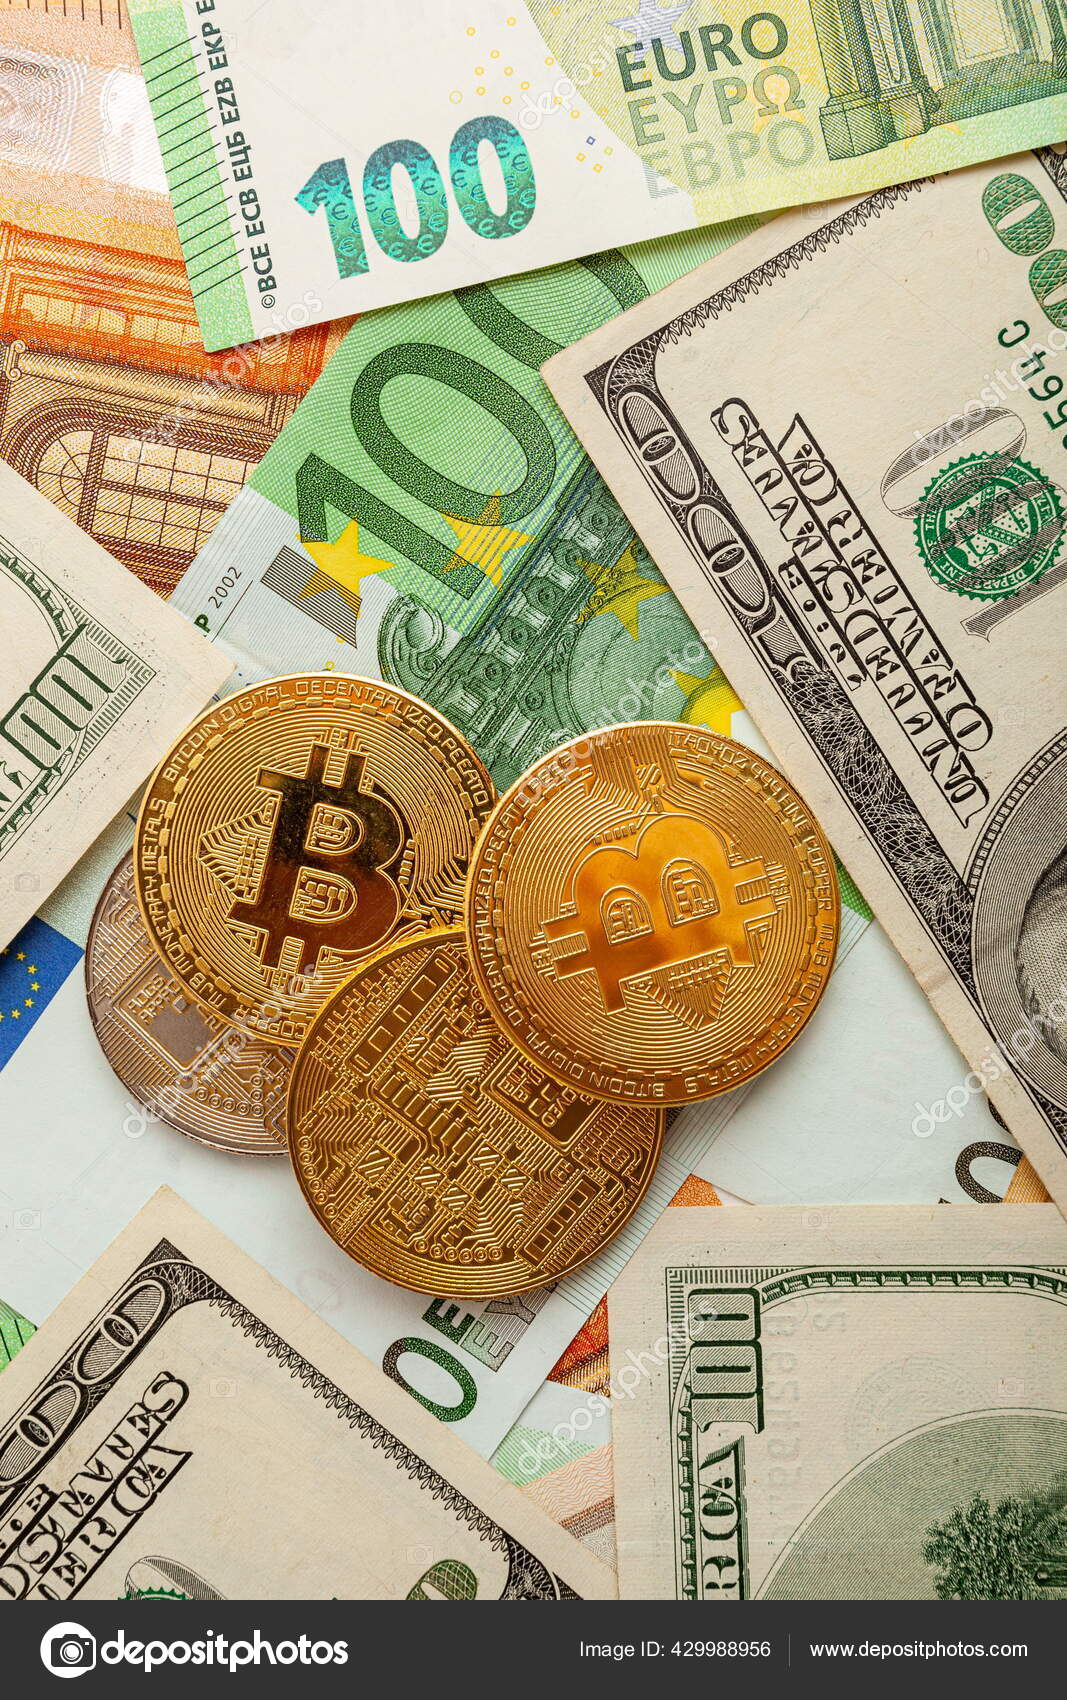 tudsz pénzt keresni a bitcoinból 25 értékű vásárlással)